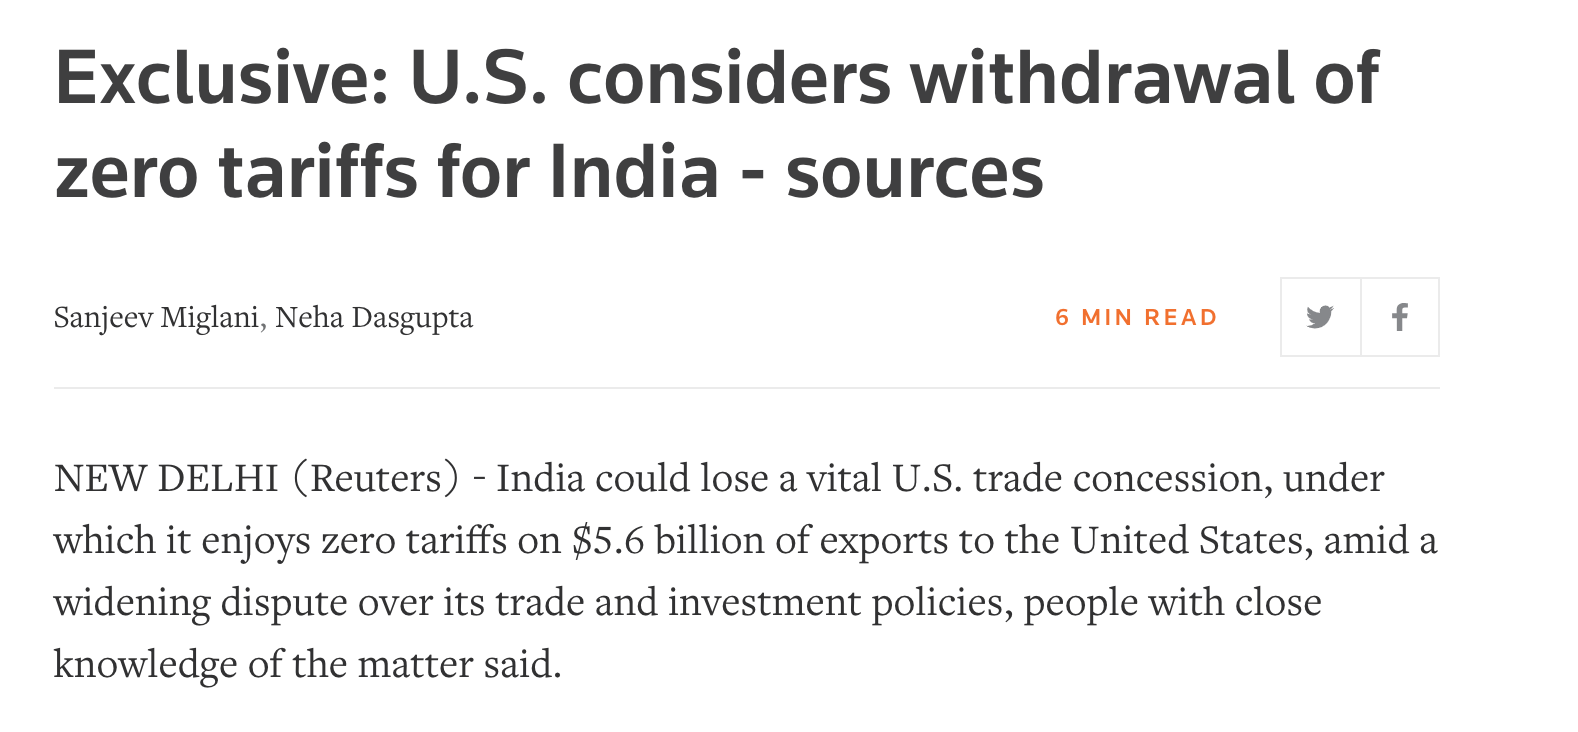 美国考虑撤销印度零关税待遇 路透社称这将是